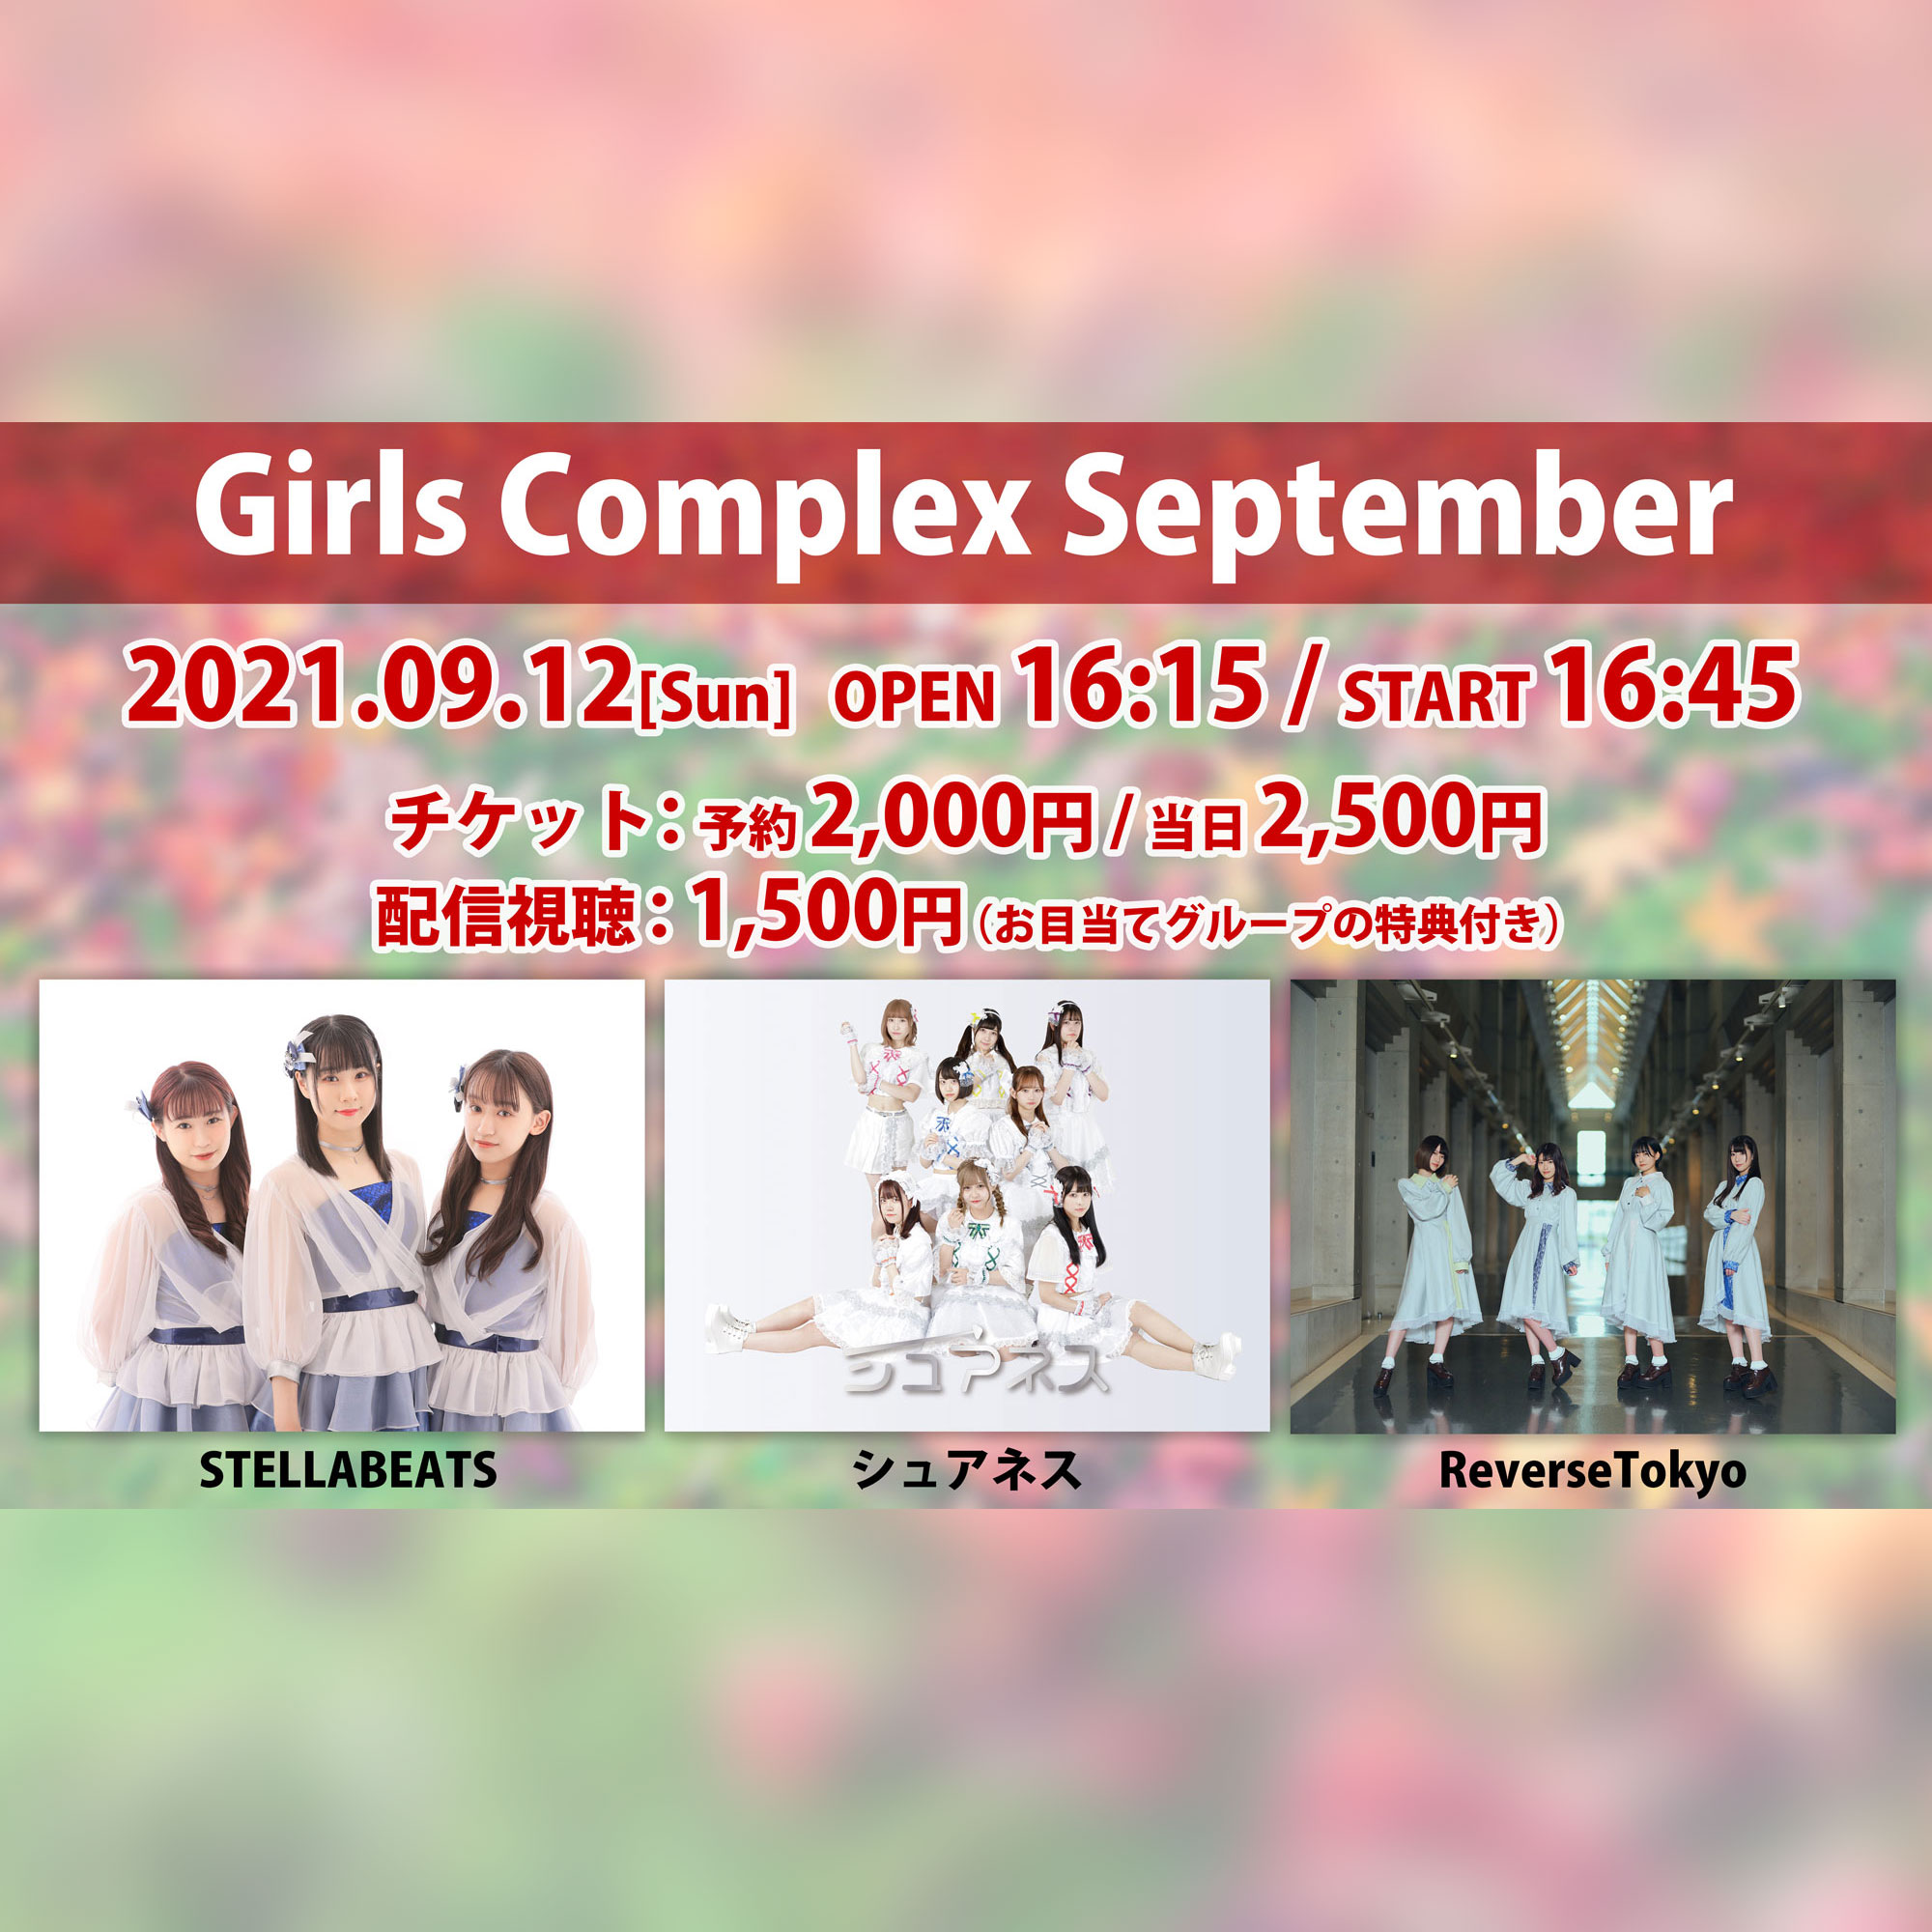 Girls Complex September